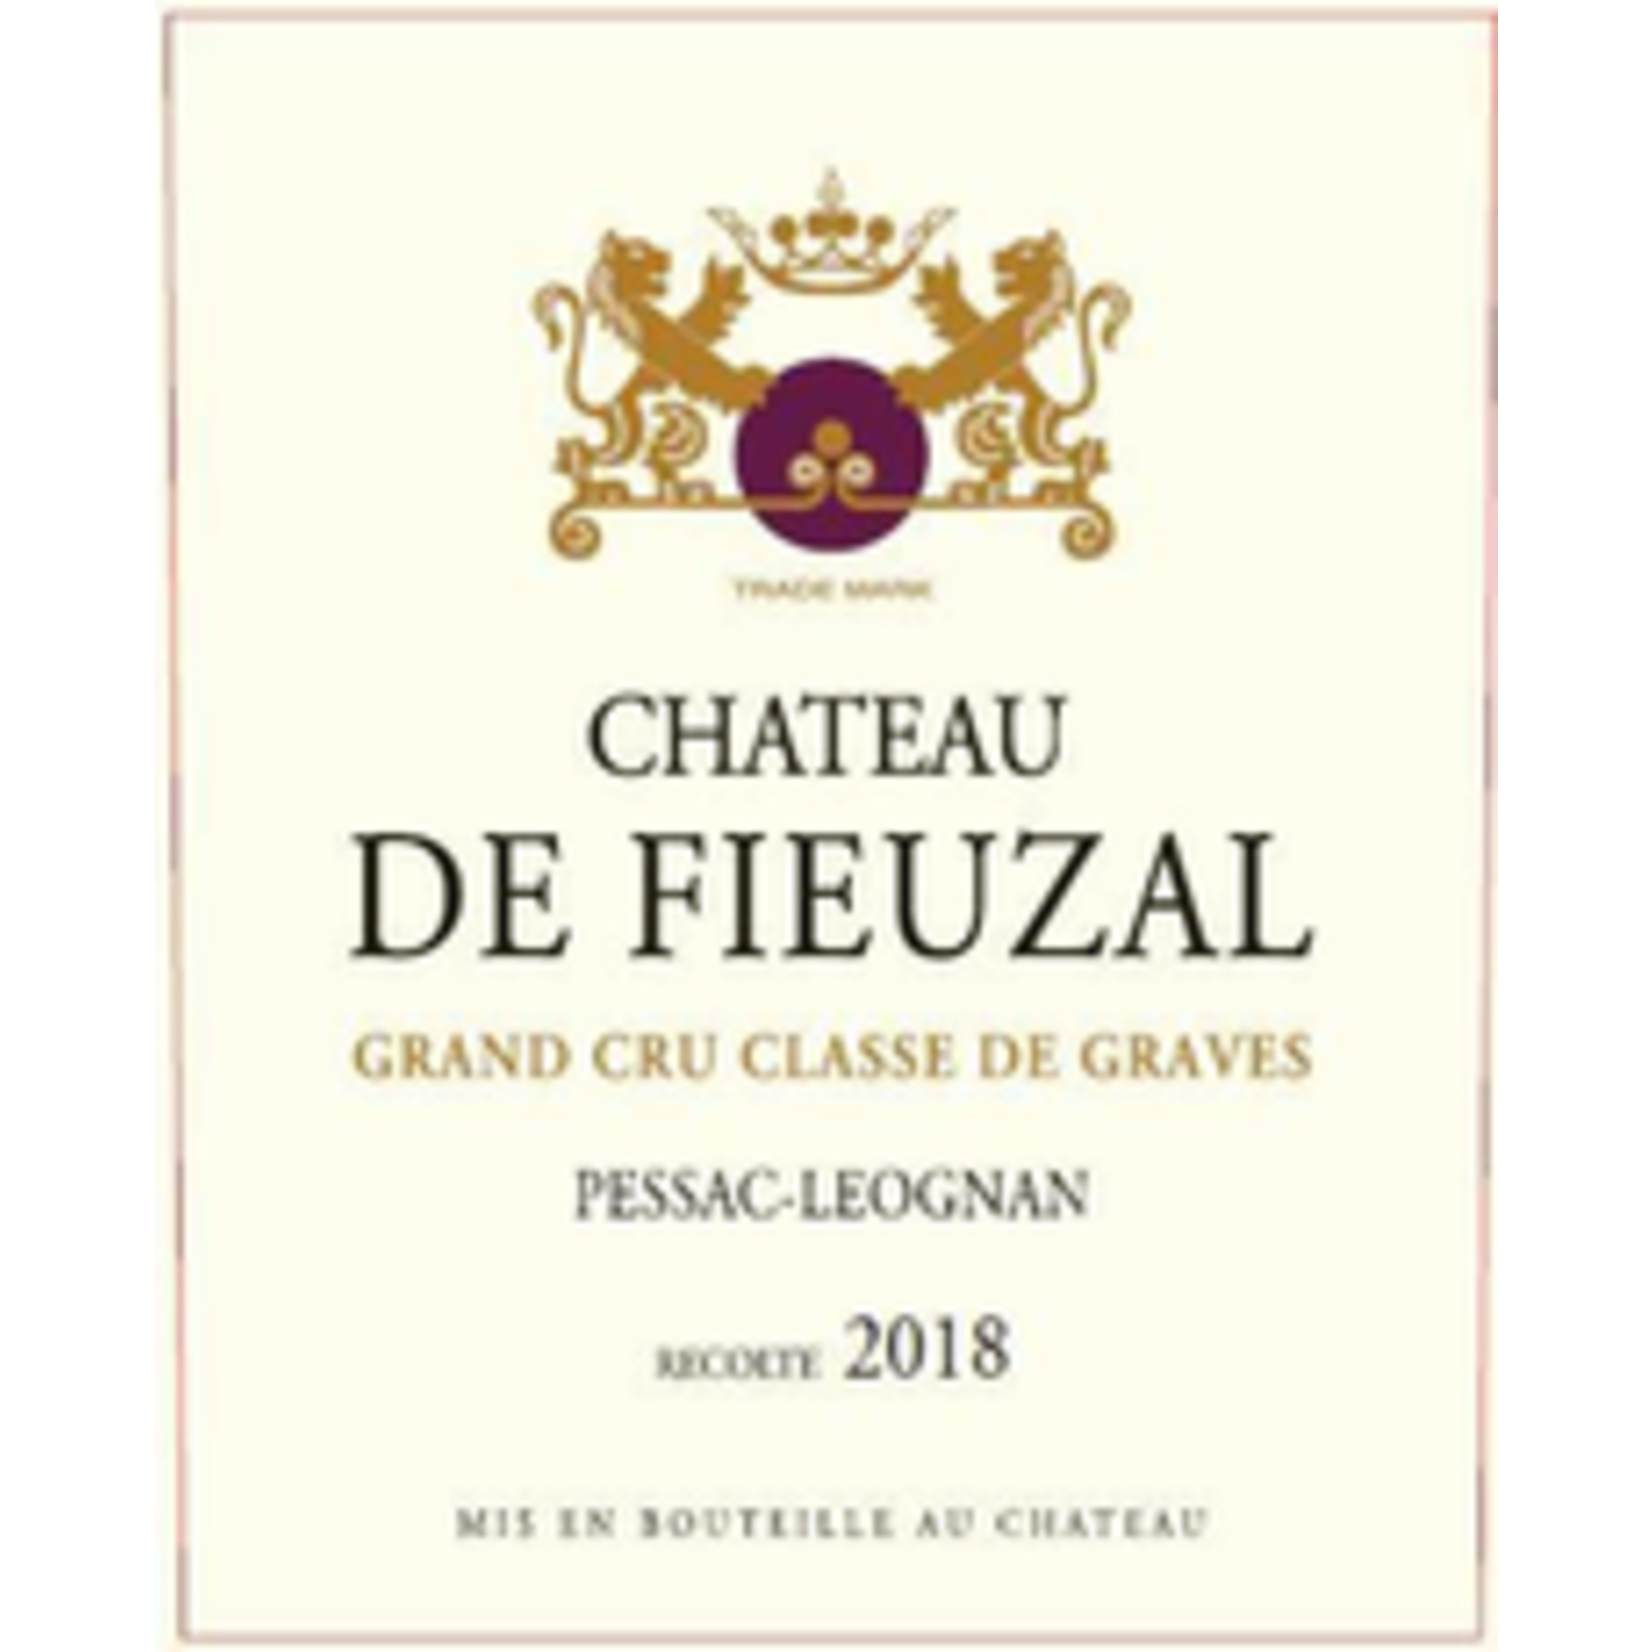 Wine Chateau de Fieuzal Pessac-Léognan Grand Cru Classé de Graves 2018